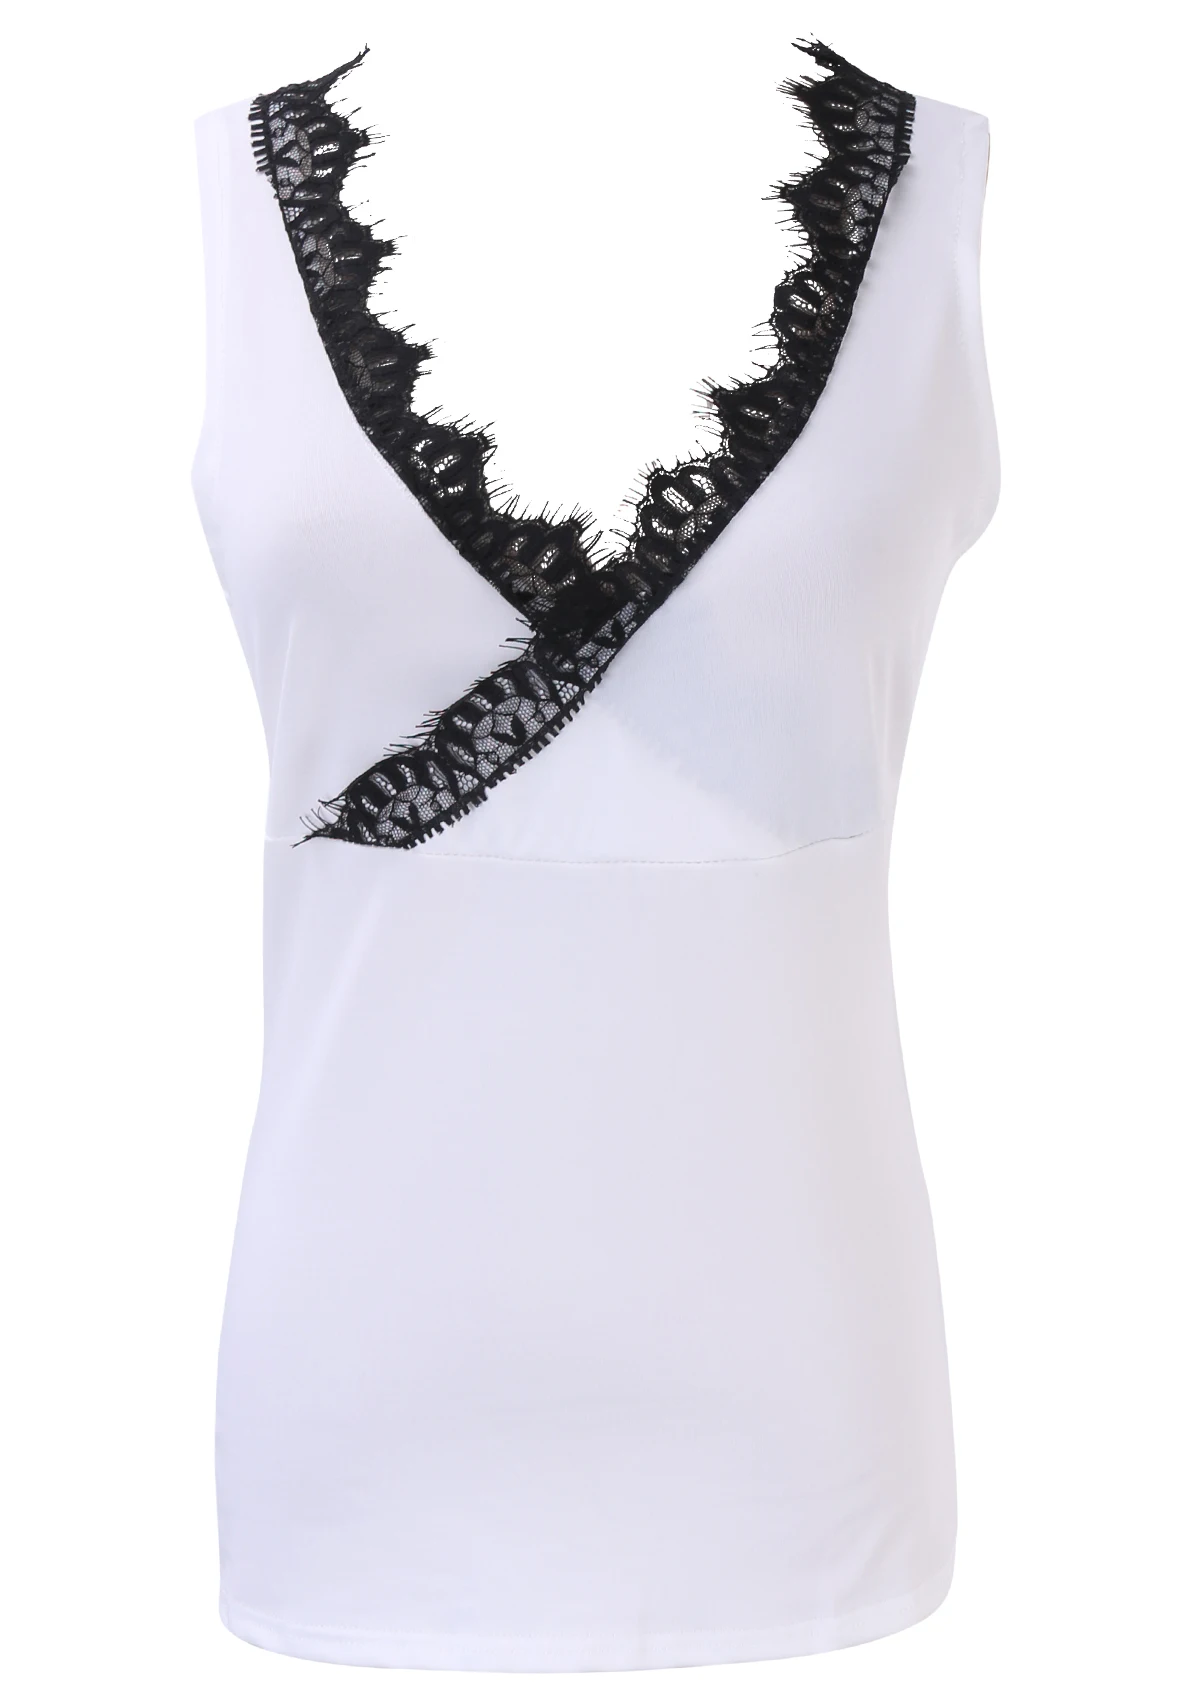 Горячая Распродажа Летняя Повседневная Блузка жилетка без рукавов для девушек стильная женская футболка s-xl стильный модный кружевной сексуальный топ с v-образным вырезом - Цвет: Белый